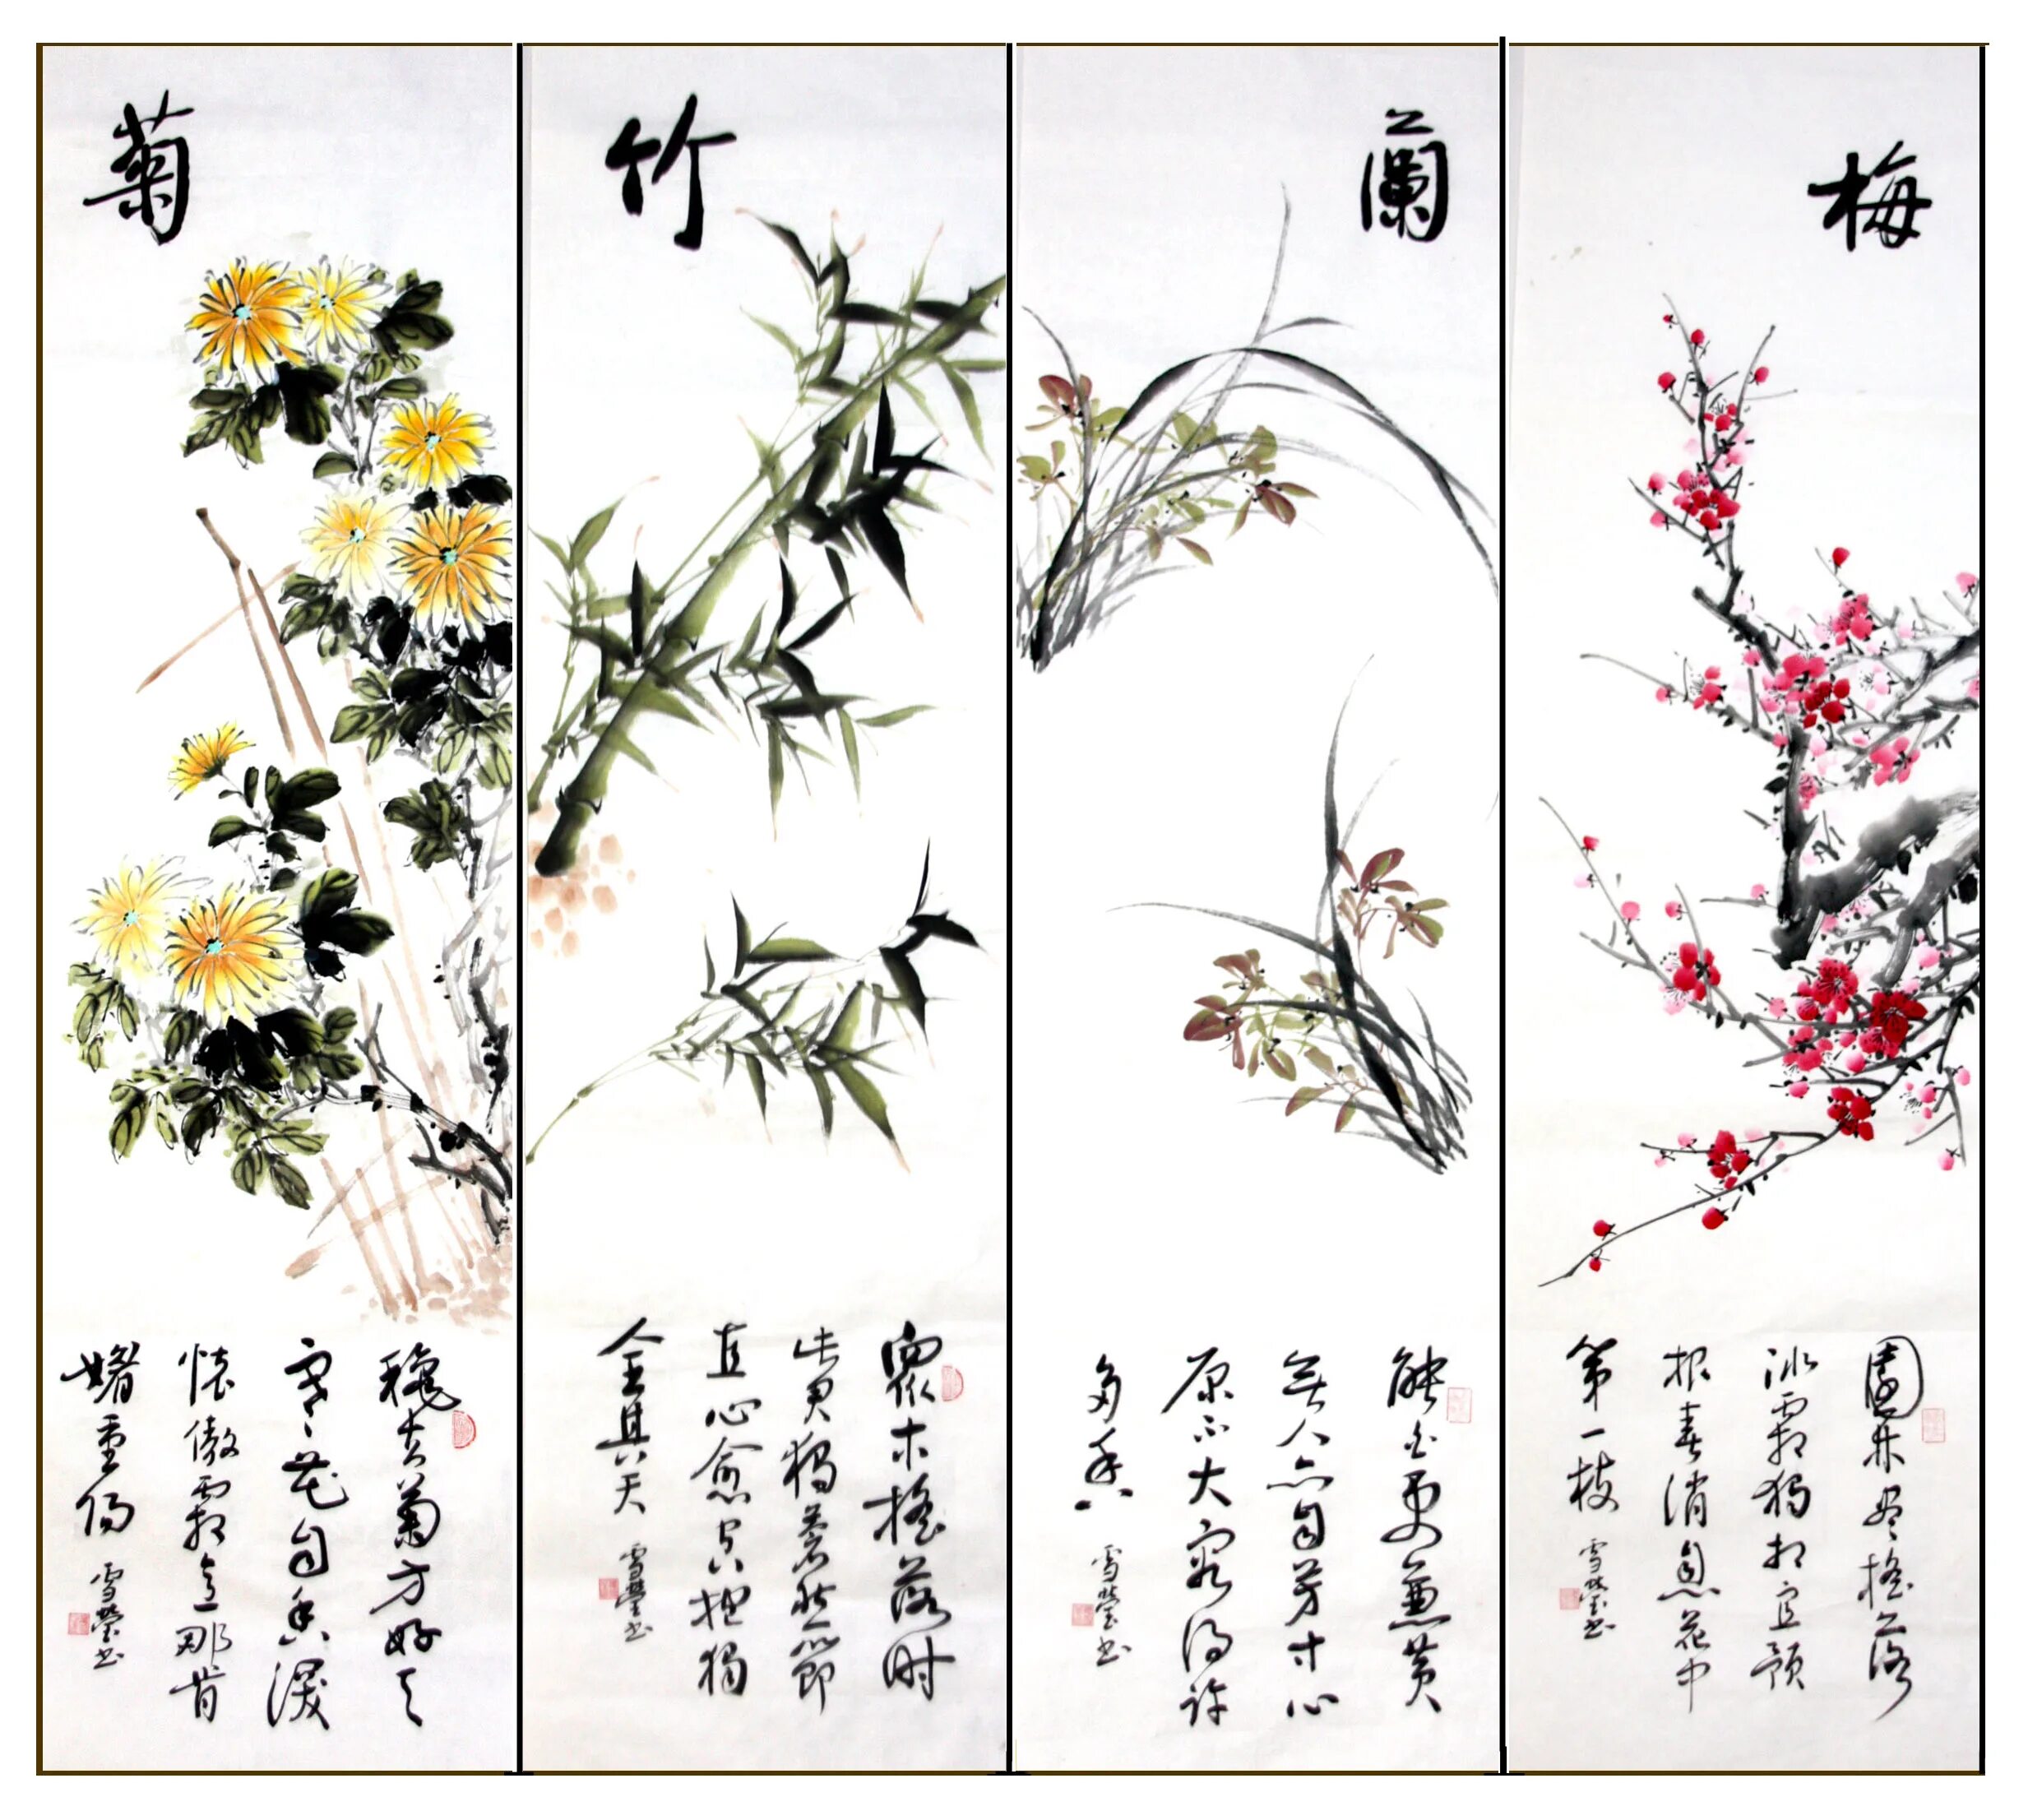 Значение китайских цветов. Четыре благородных в китайской живописи. 4 Благородных растения Китая. Традиционная китайская живопись гохуа. Четверо благородных в китайской живописи.